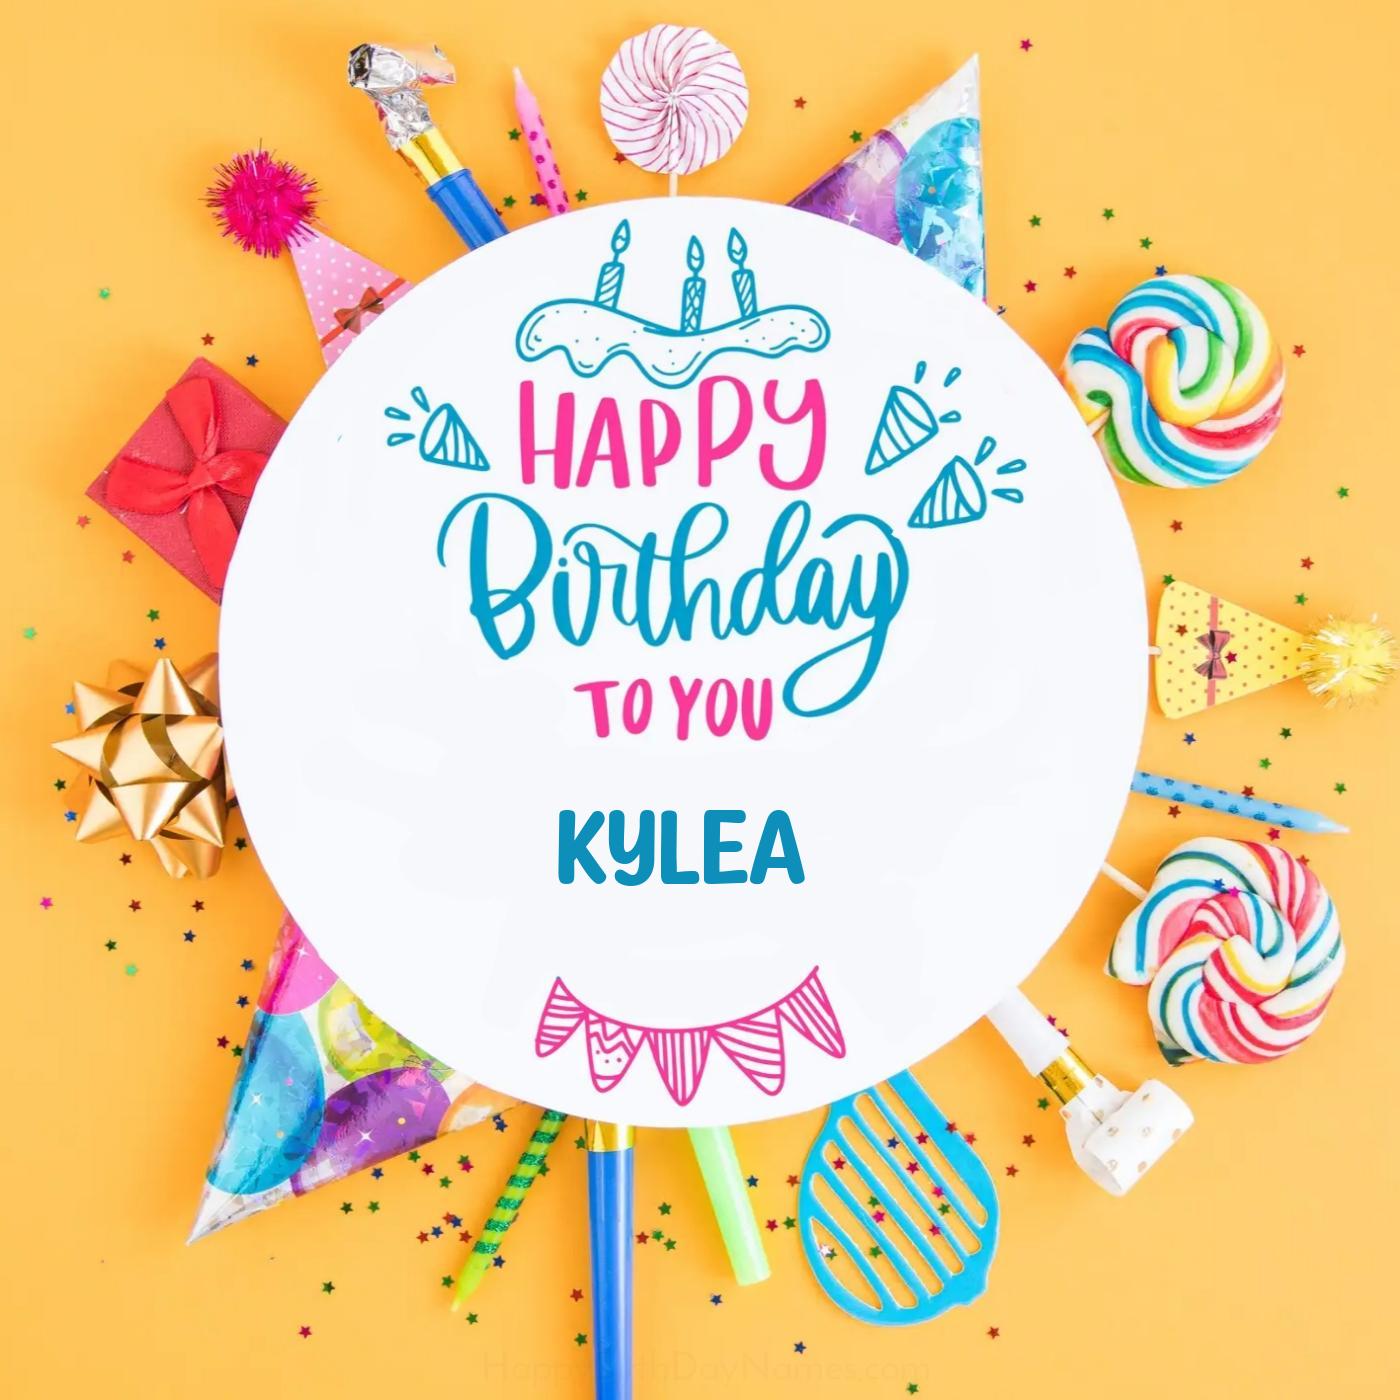 Happy Birthday Kylea Party Celebration Card